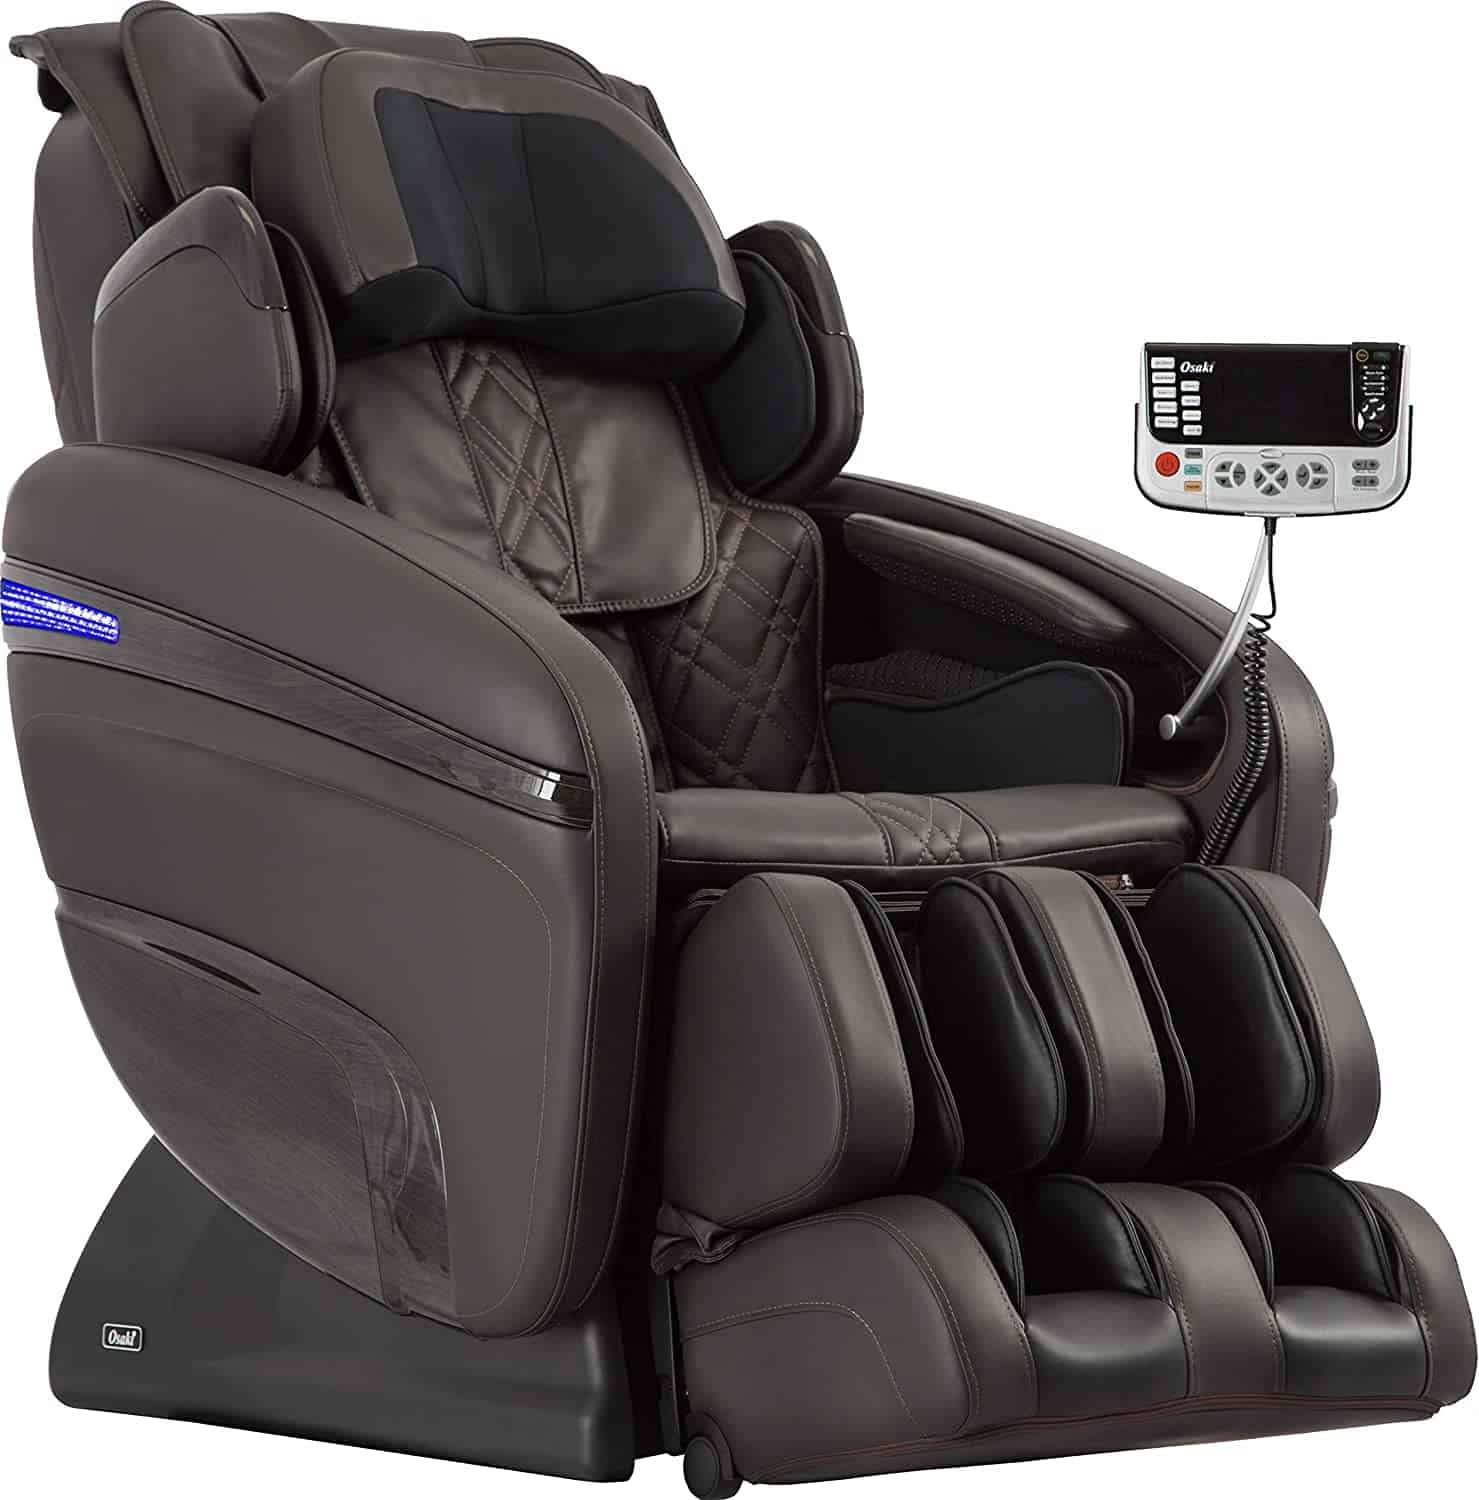 OSAKI OS-7200H Pinnacle Massage Chair